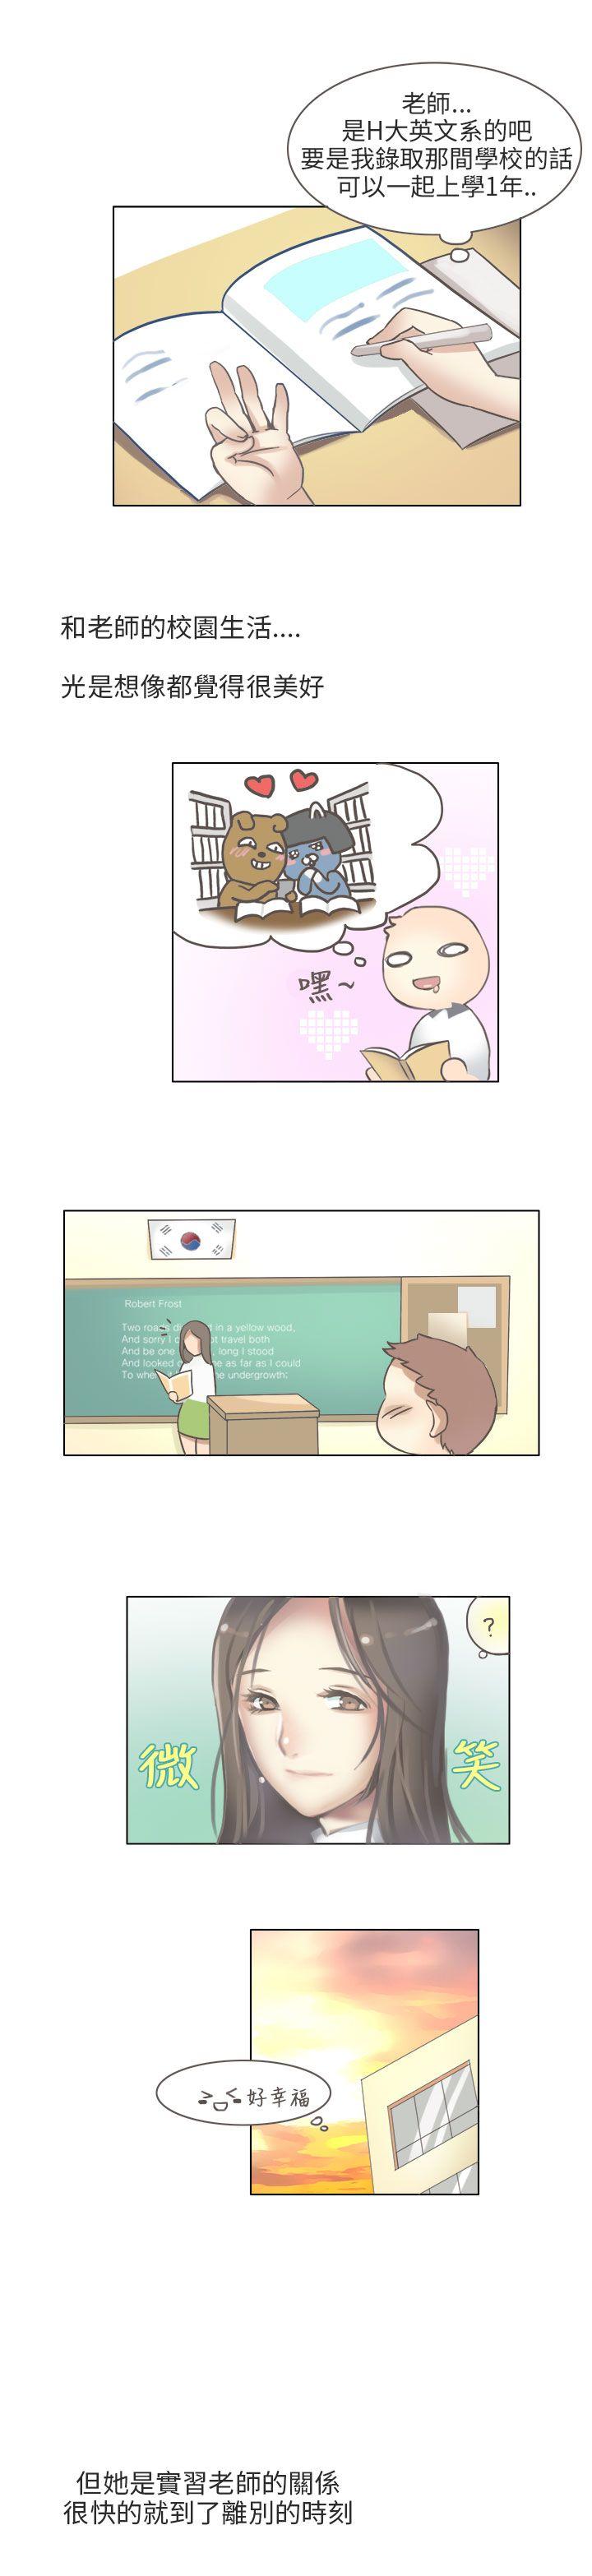 韩国污漫画 秘密Story第二季 与老师的再次相遇(中) 5